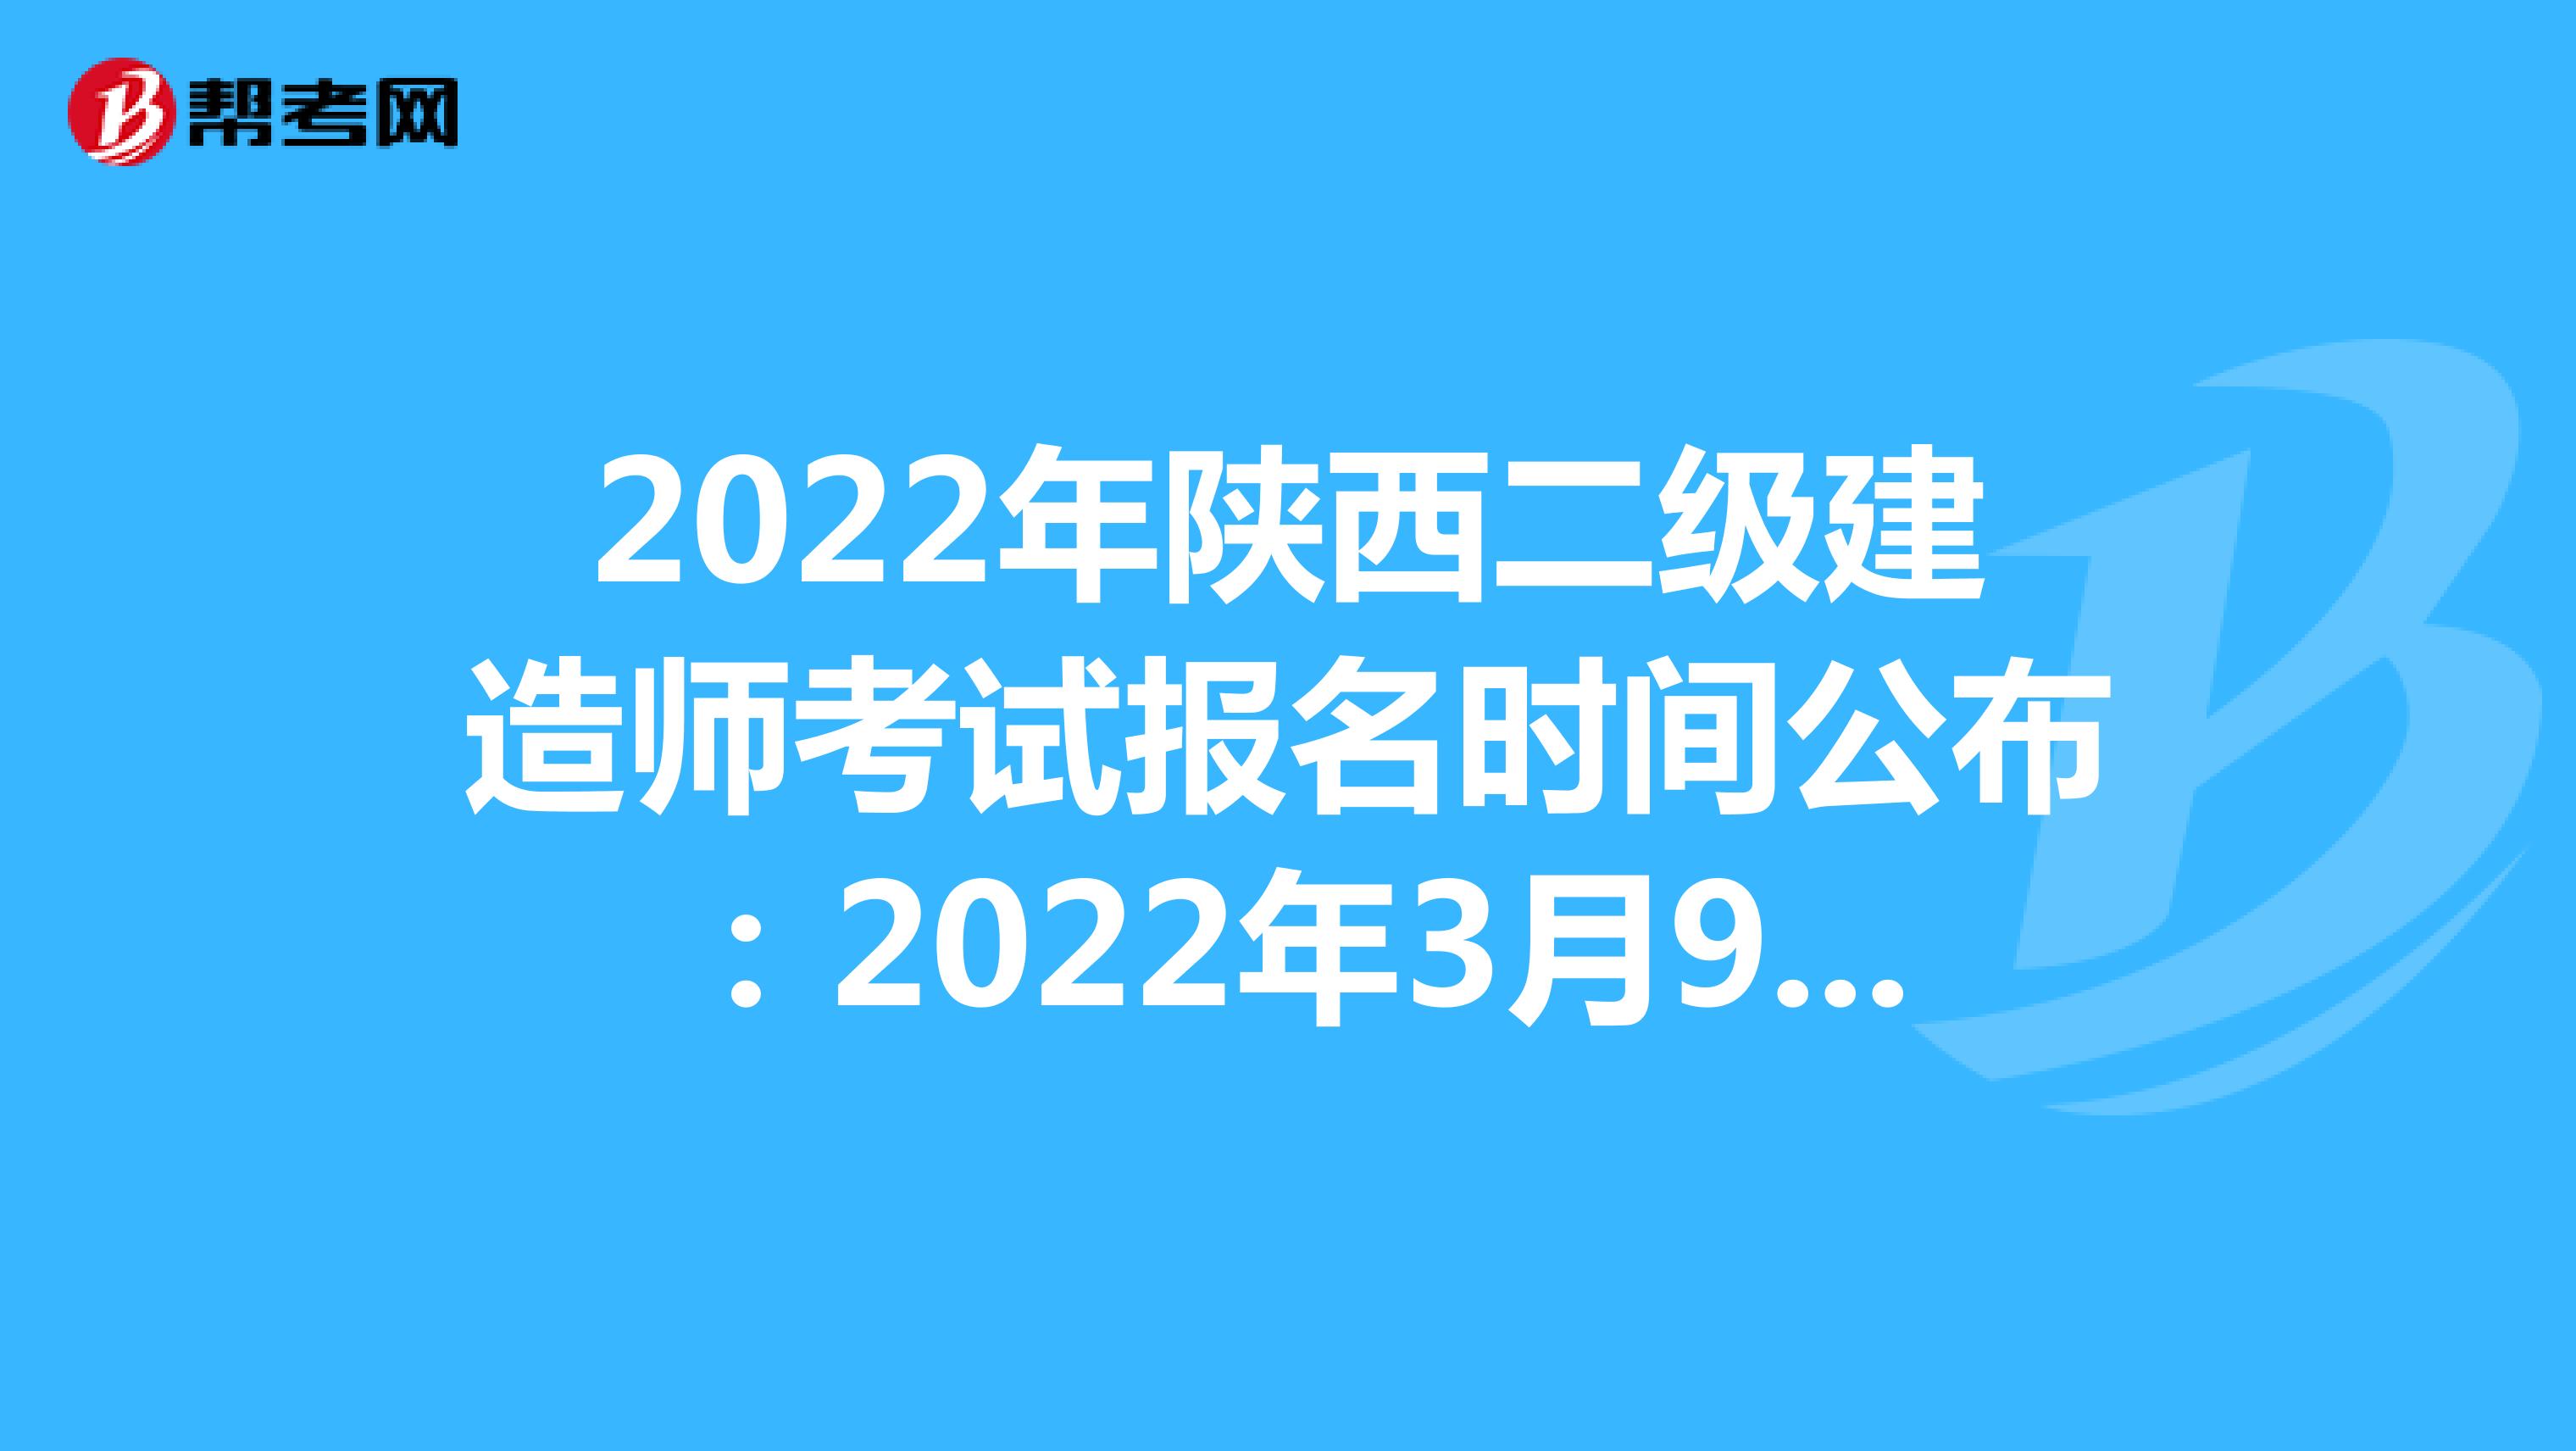 2022年陜西二級建造師考試報名時間公布：2022年3月9日-3月15日